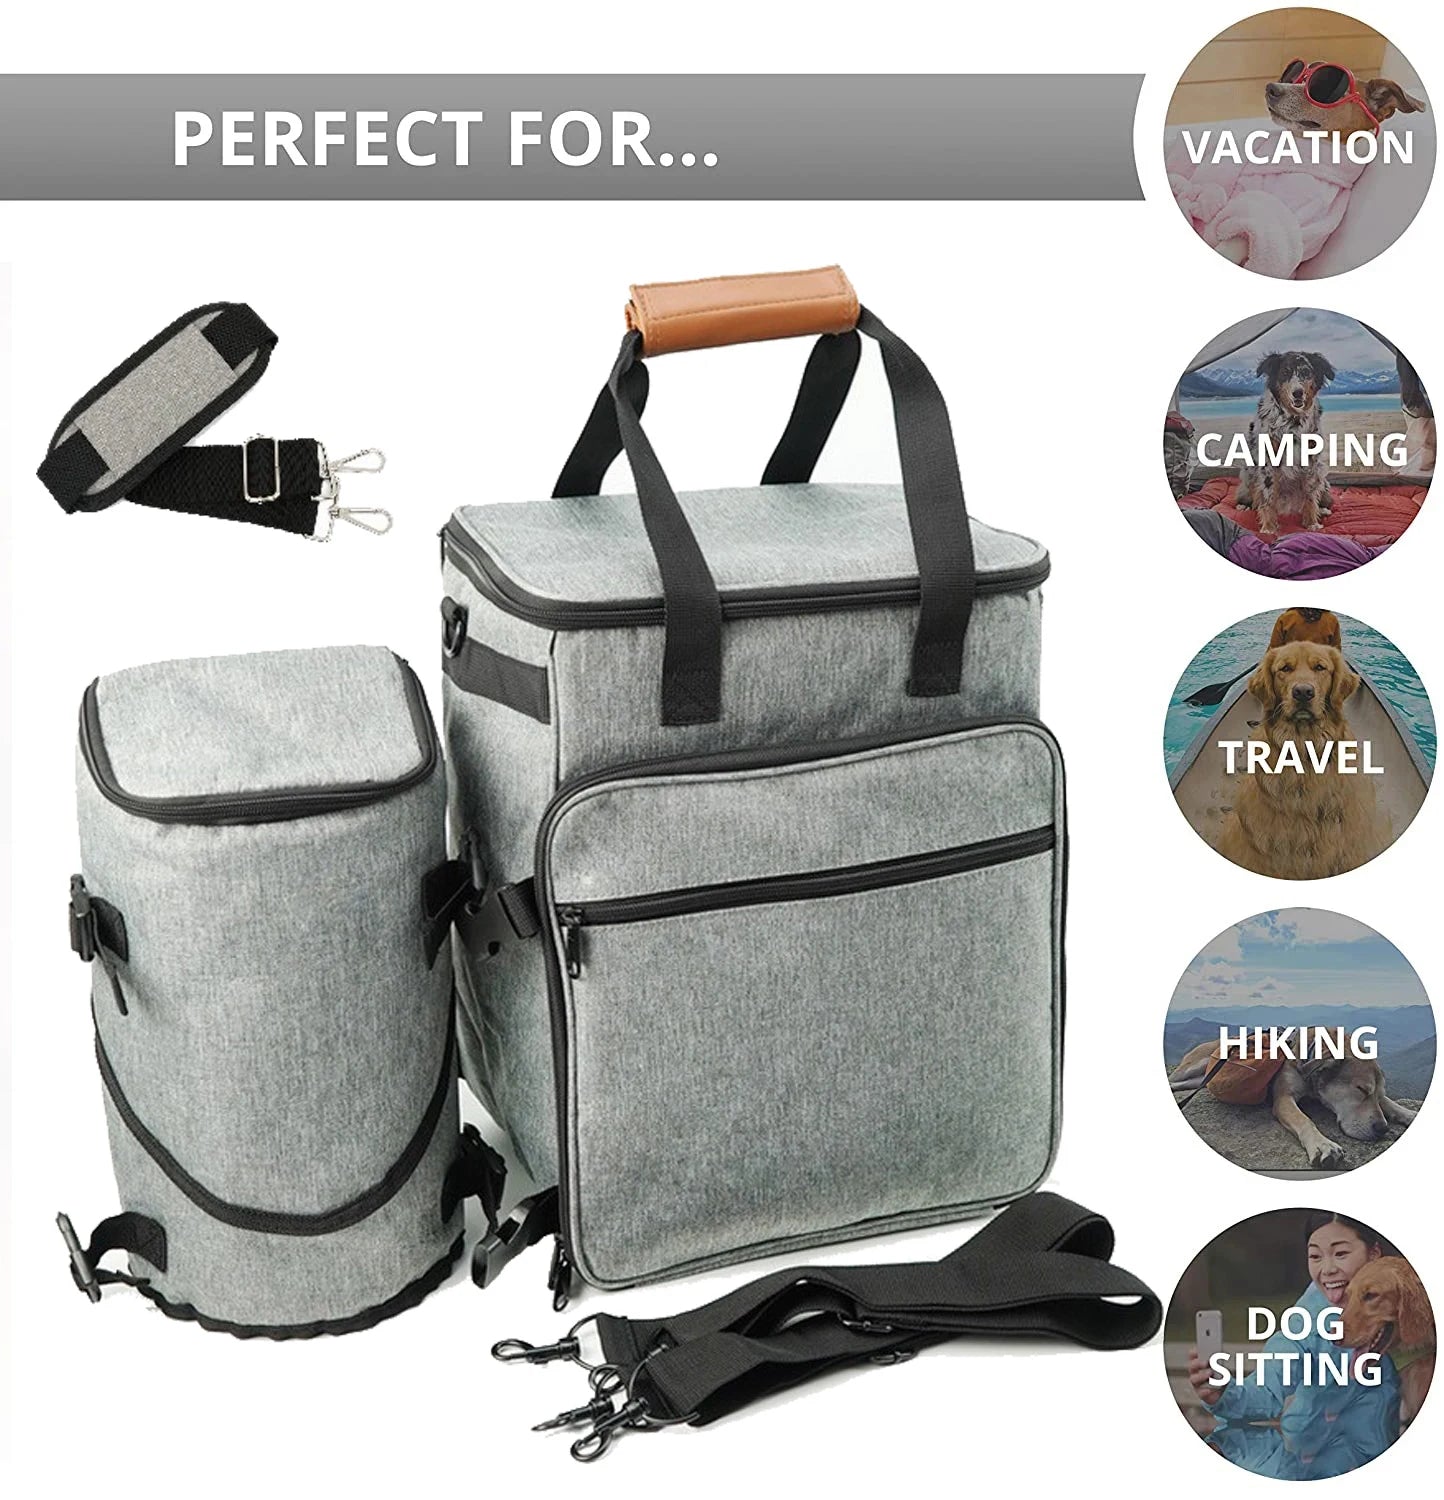 Pet Travel Bag: Spacious Organizer for Dog Essentials & Travel Comfort  petlums.com   